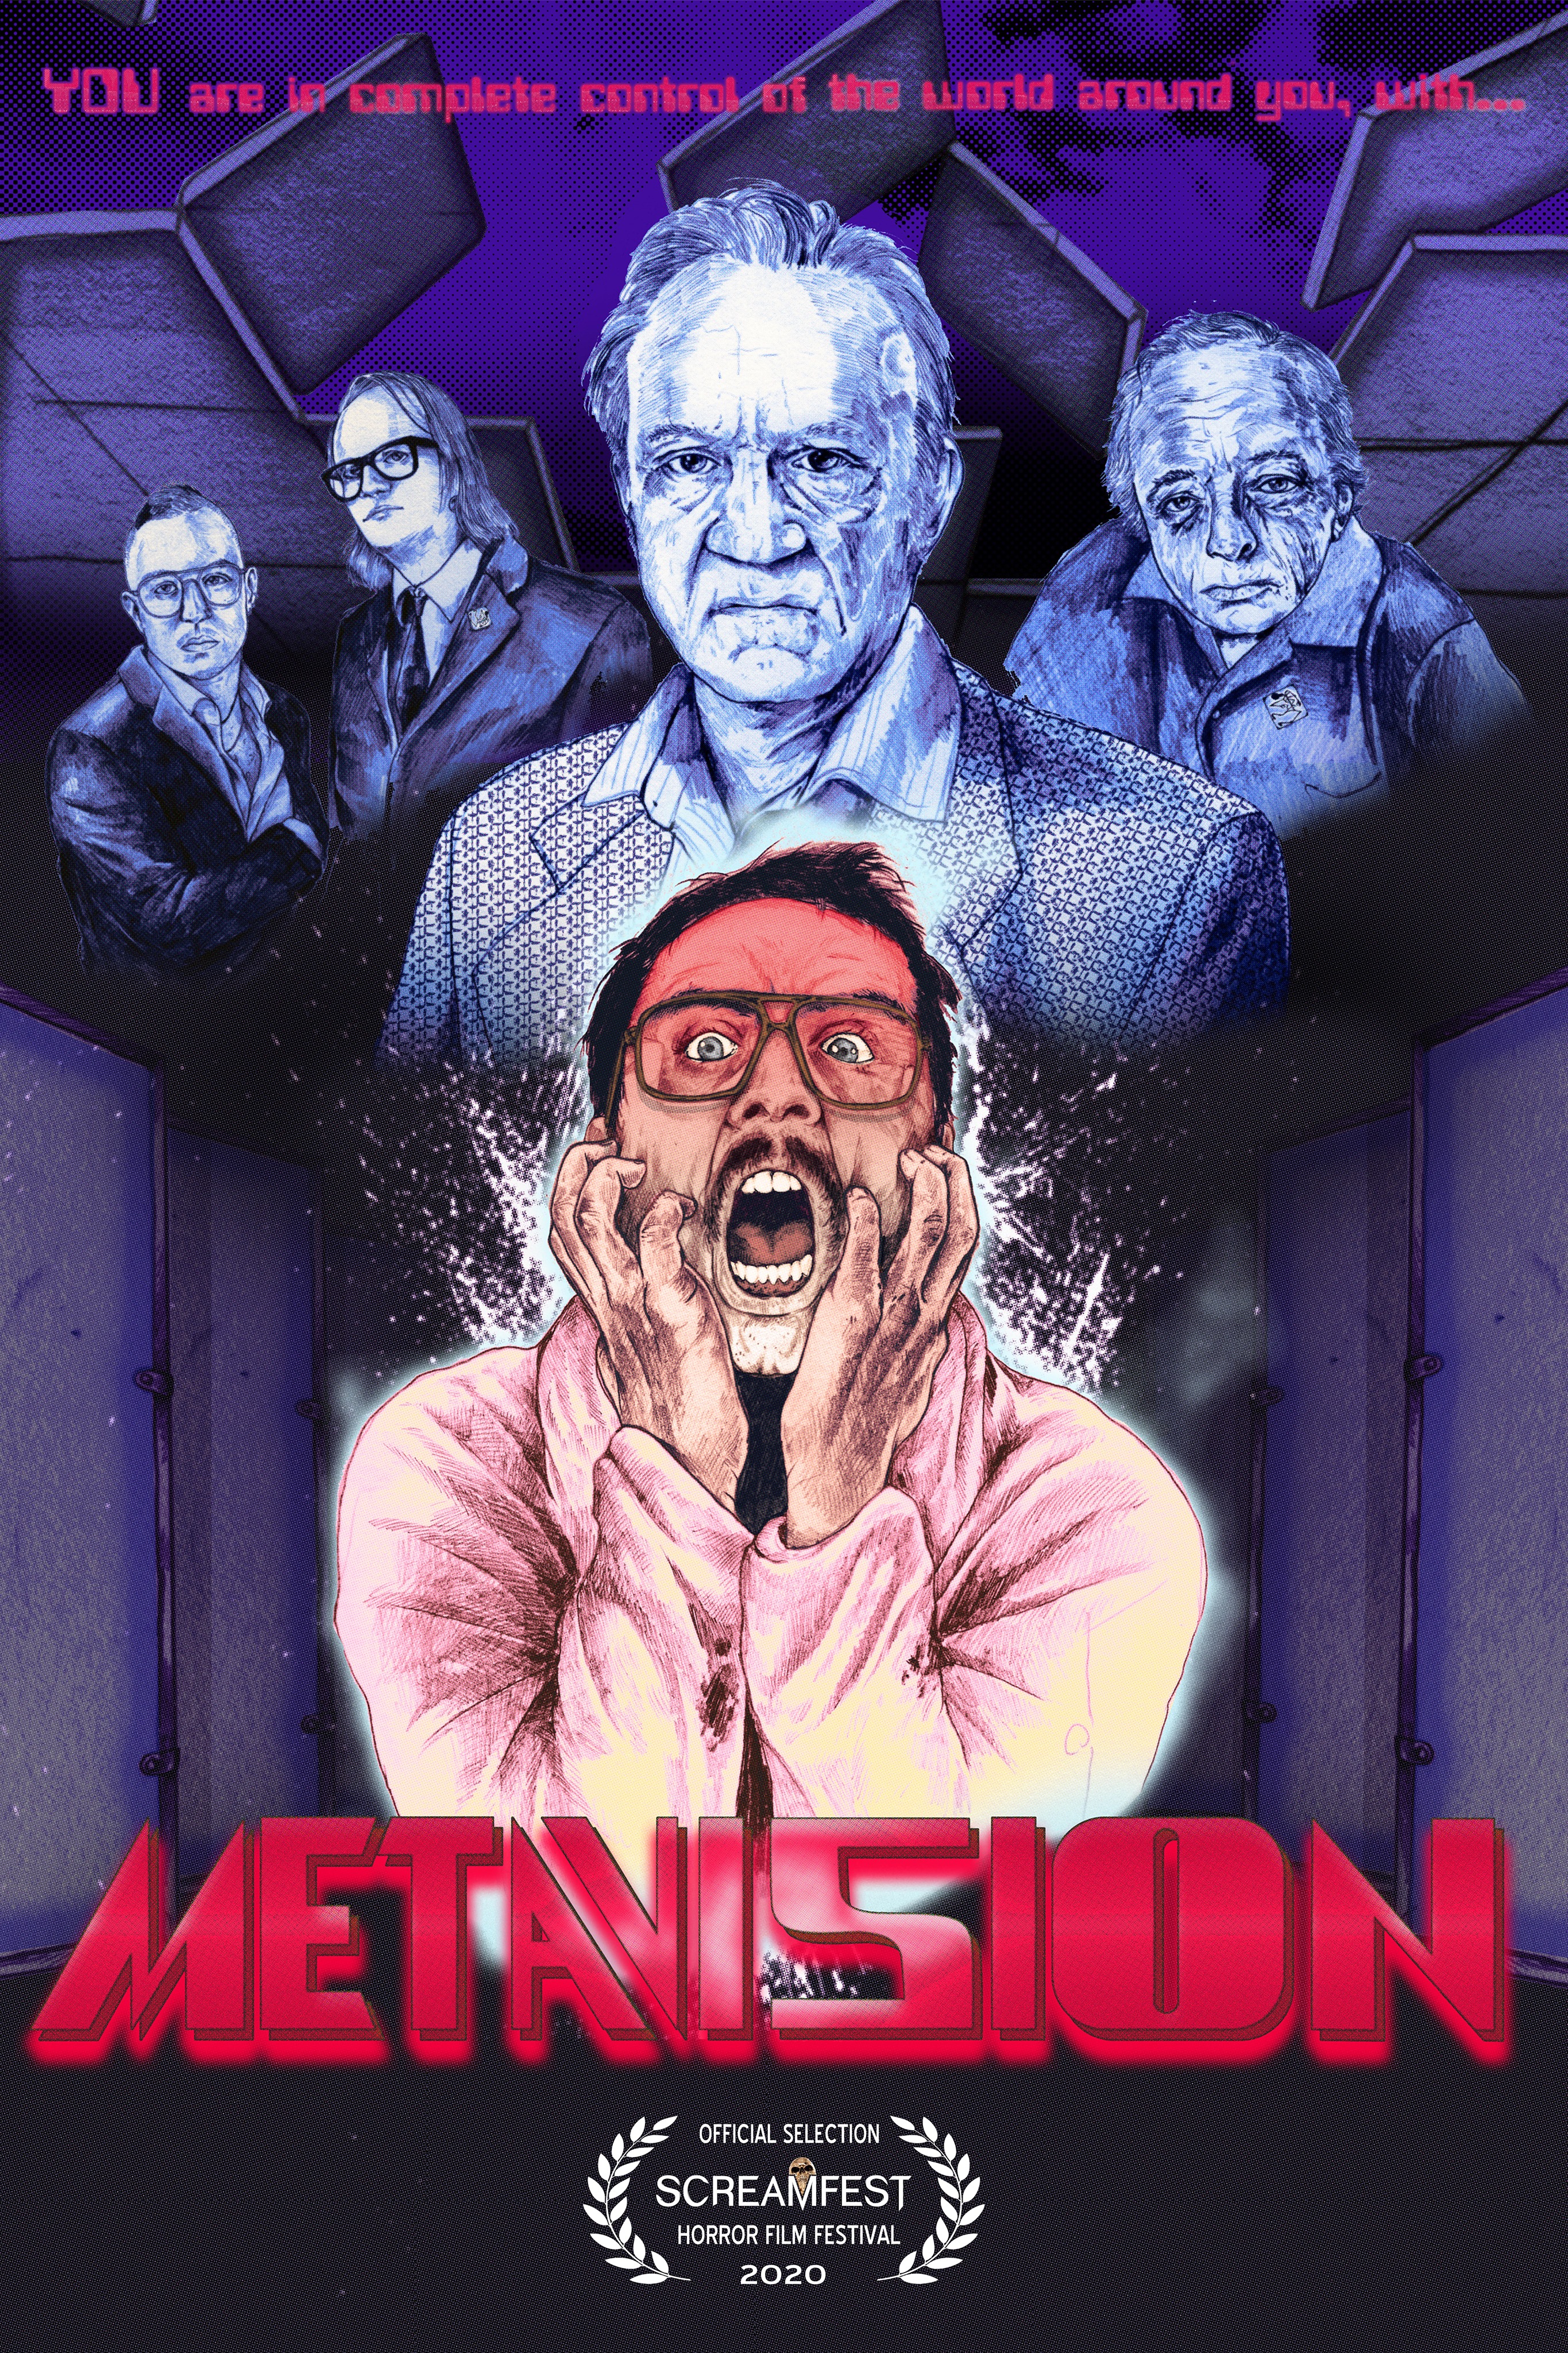 MetaVision (2020)